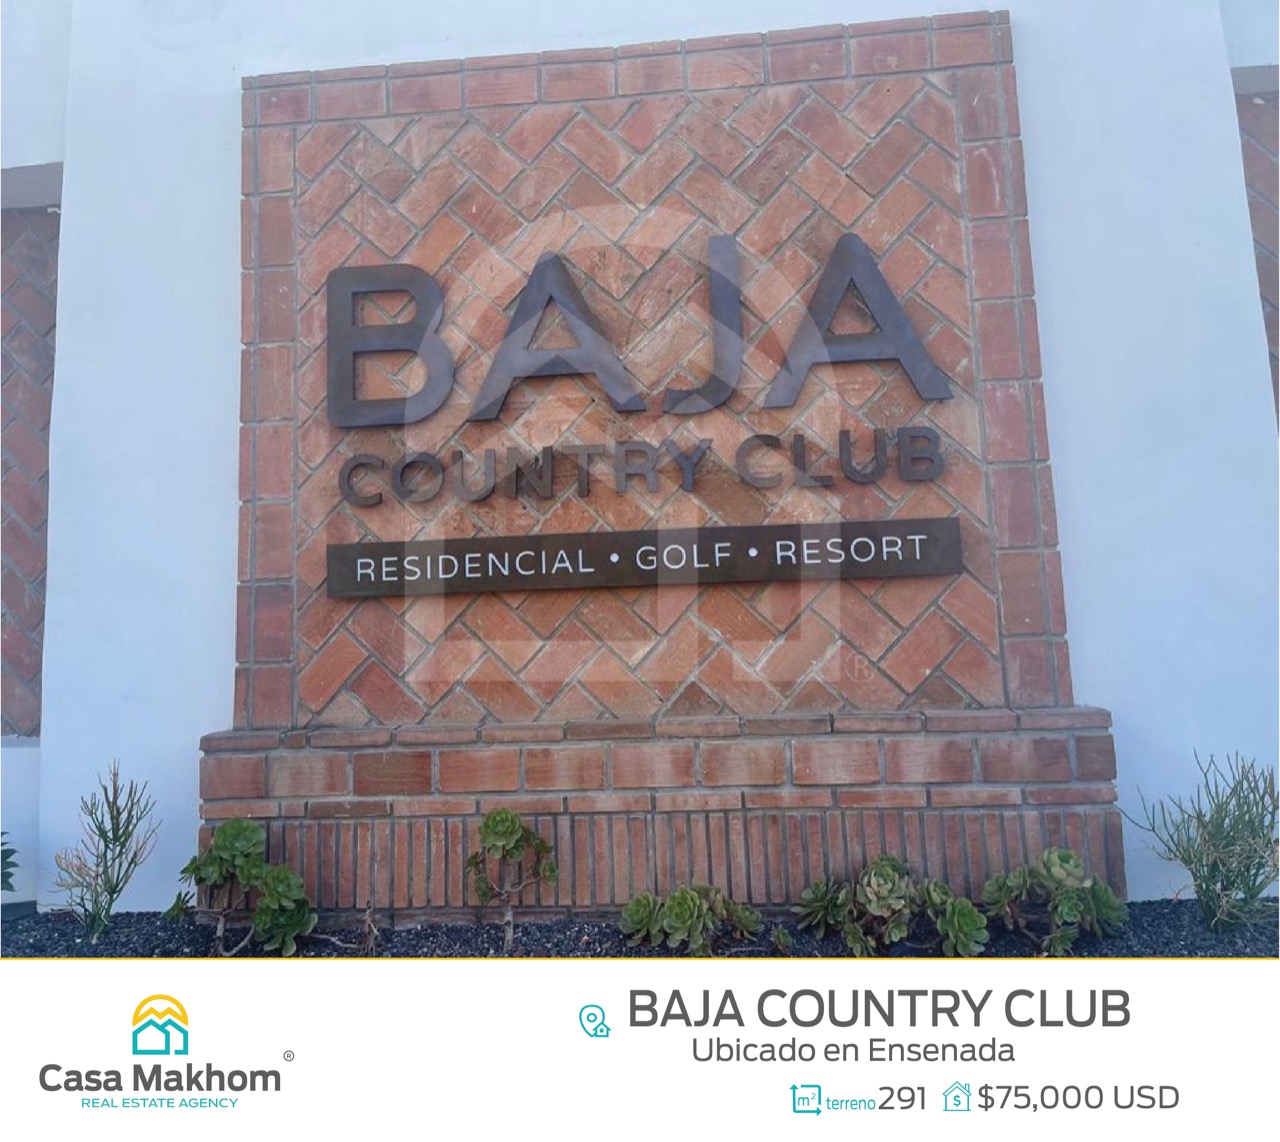 Terreno en Baja Country Club Ensenada – Casa Makhom